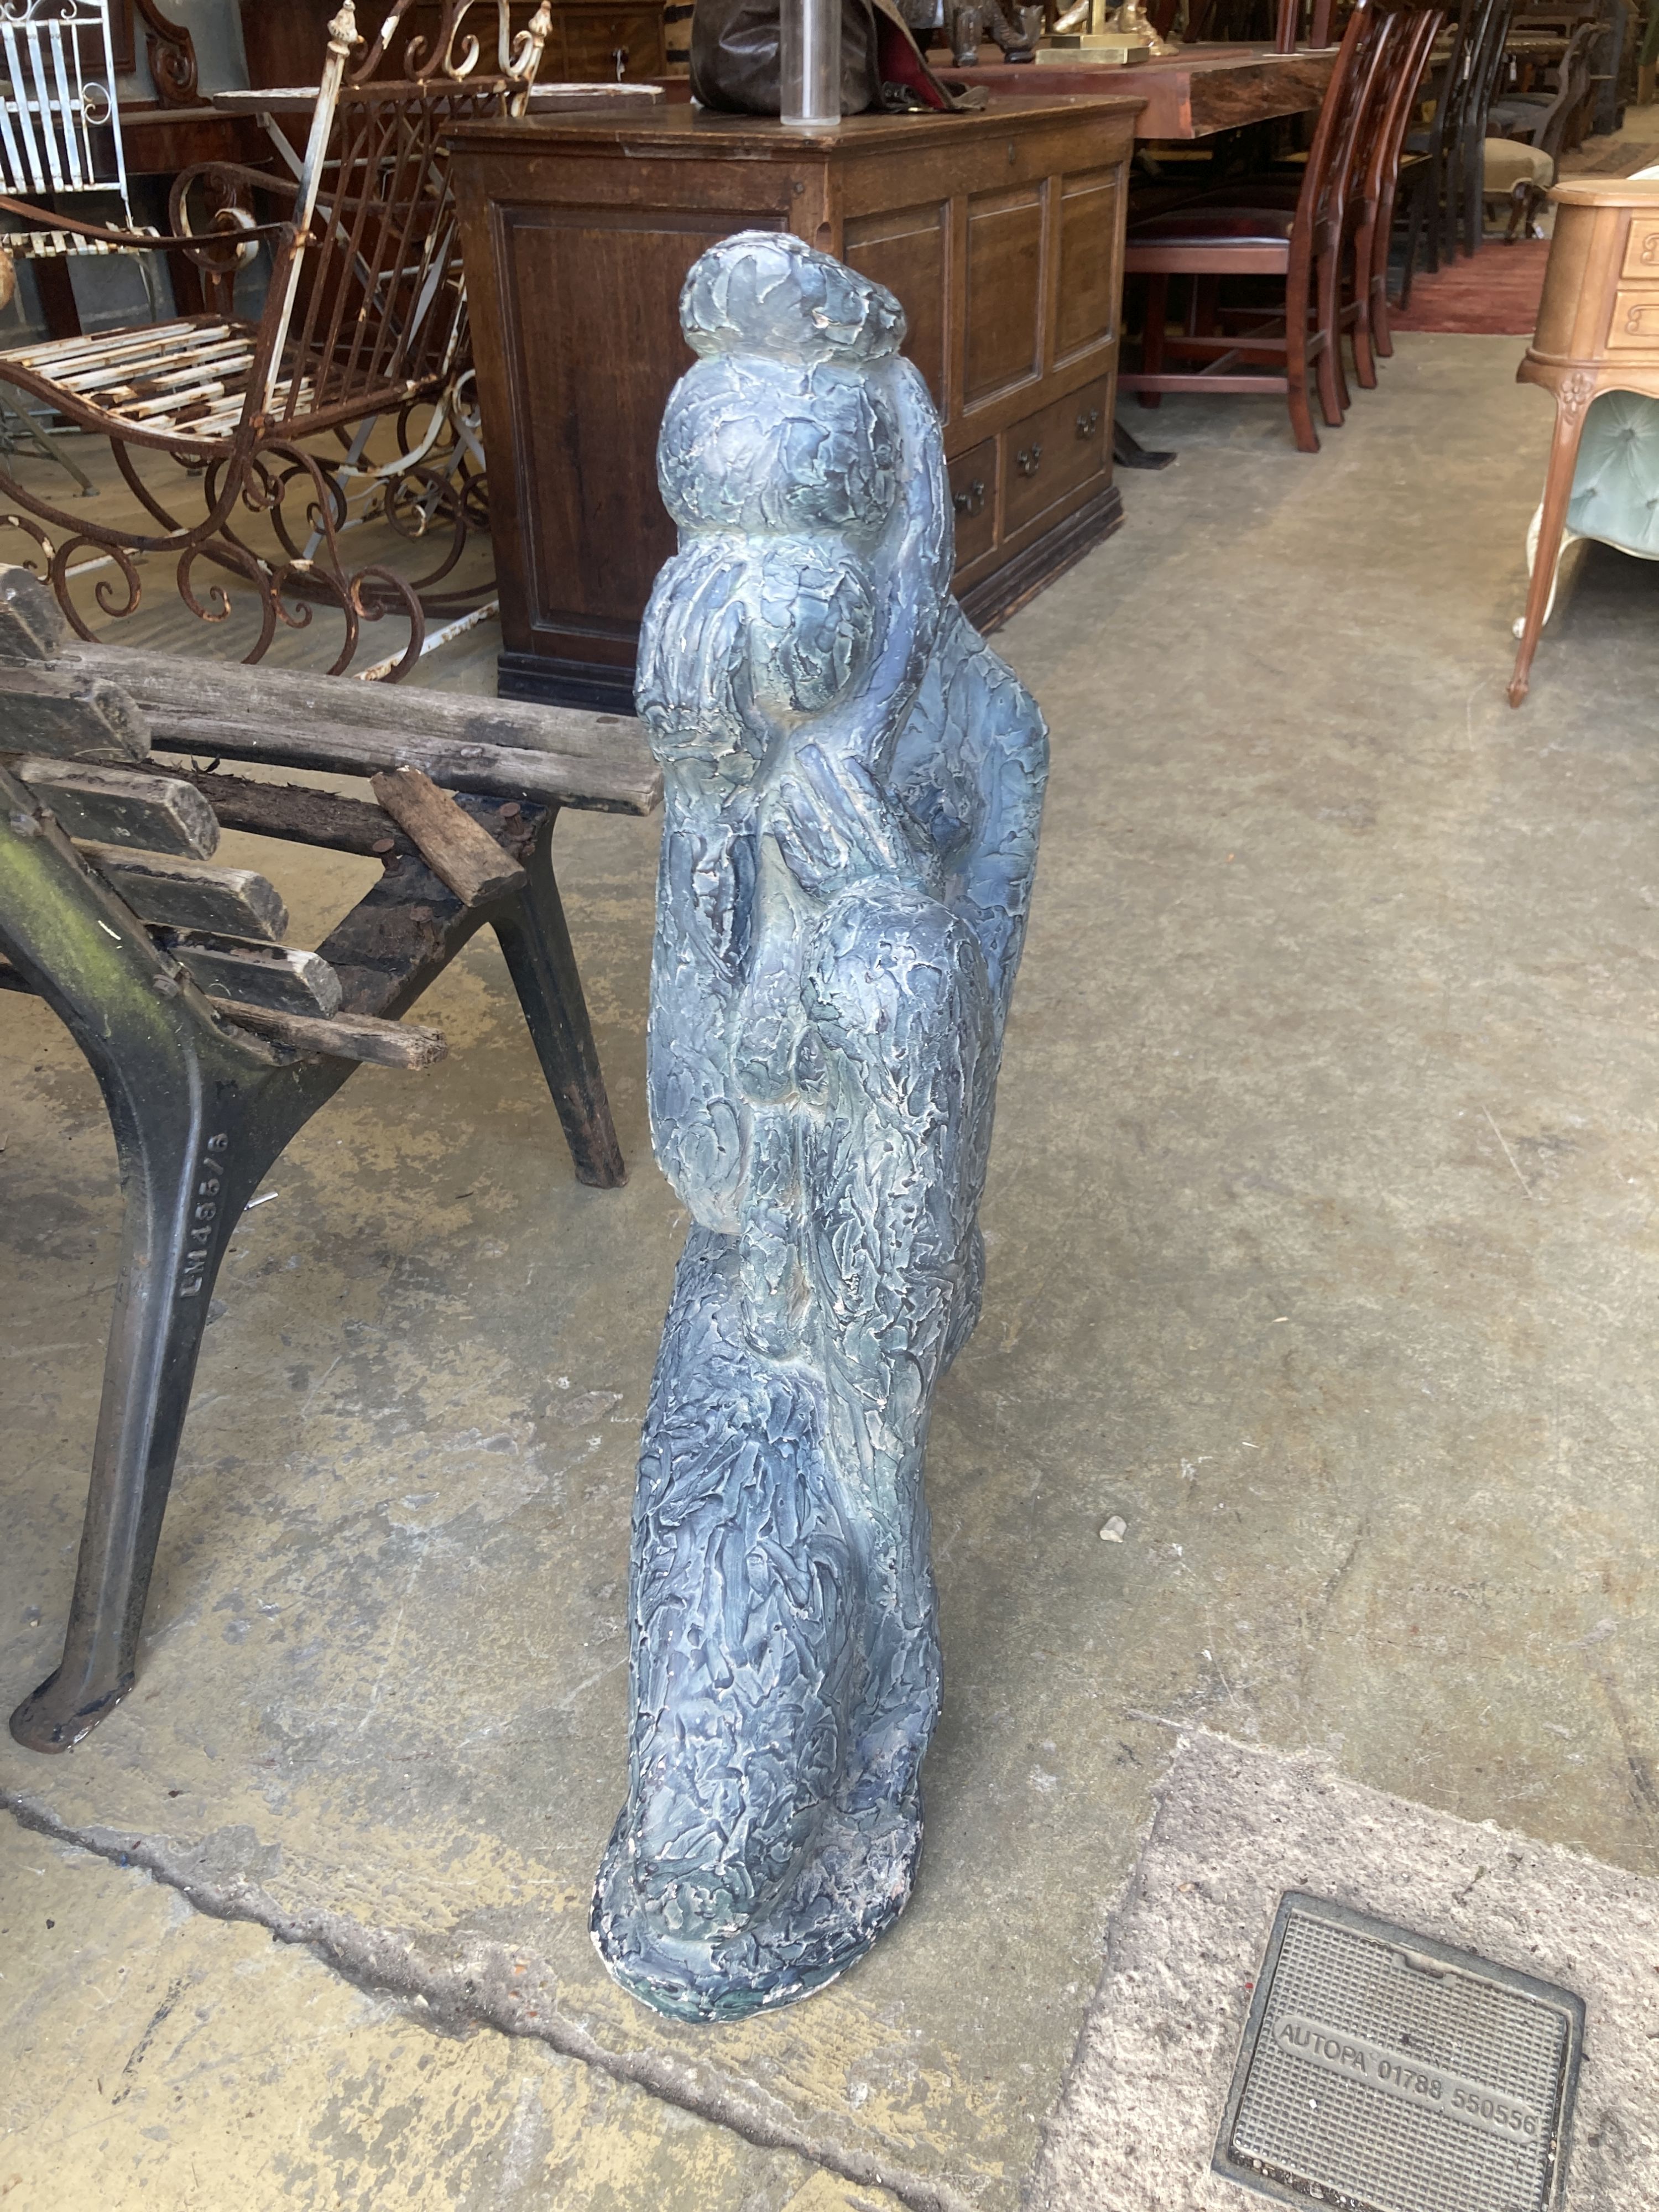 An Austin sculpture Durastone figure of a crouching girl